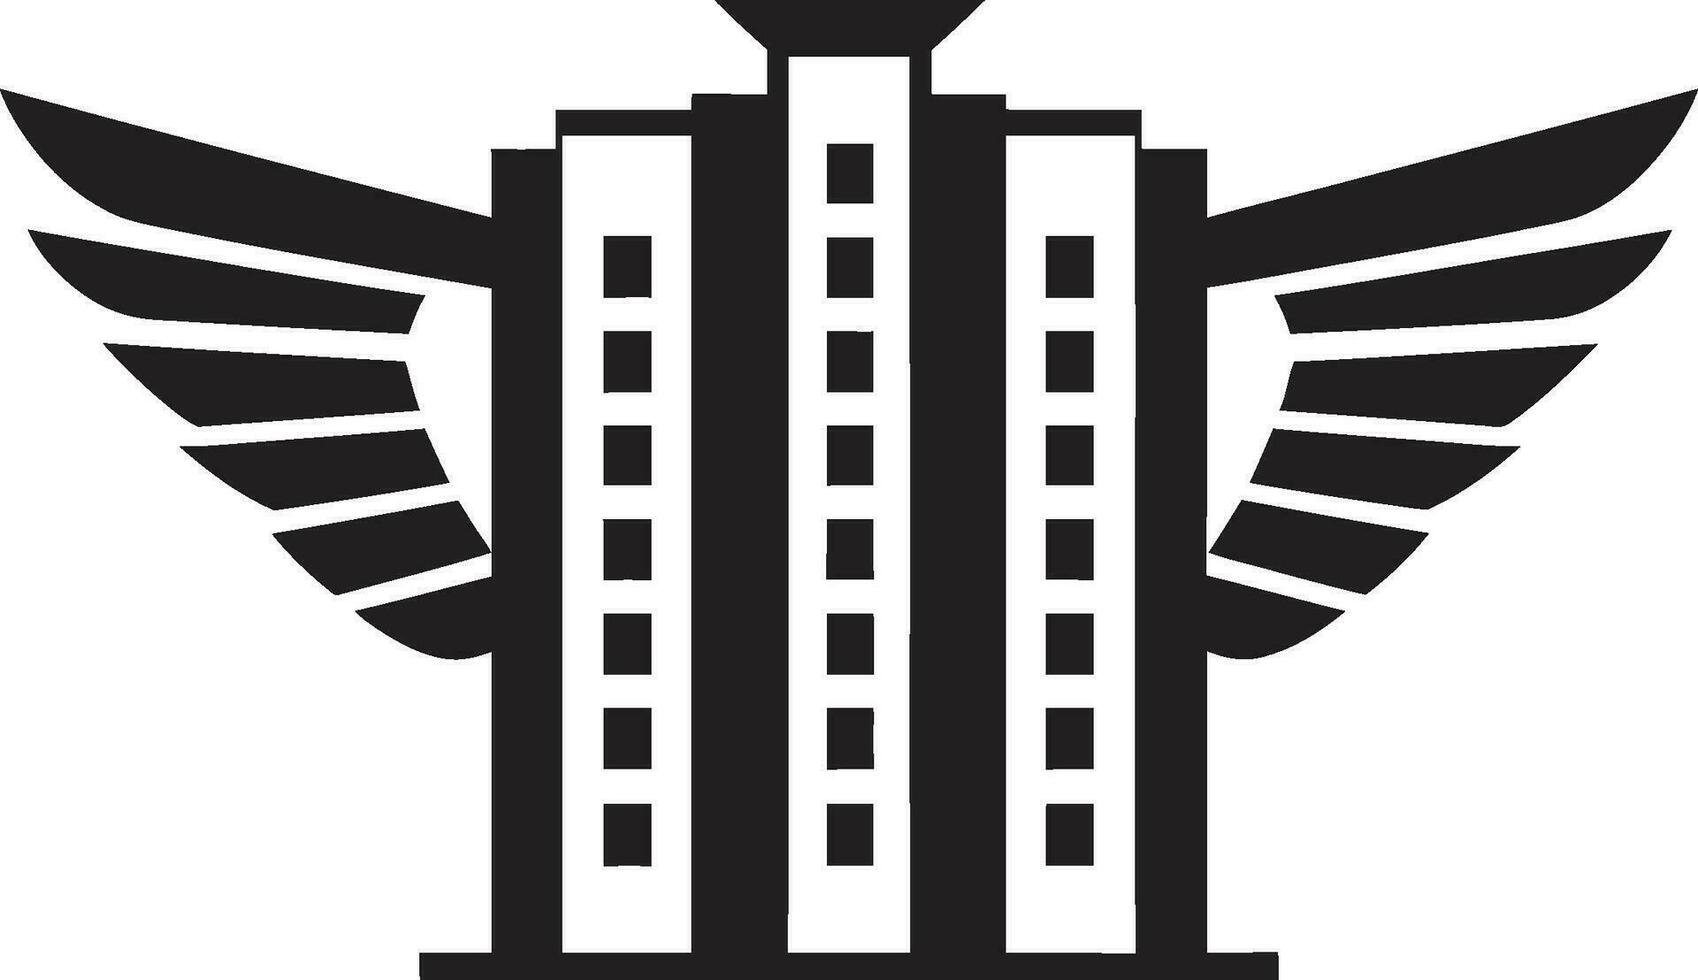 Gezondheid veilige haven kliniek gebouw logo medisch wonder ziekenhuis iconisch embleem vector